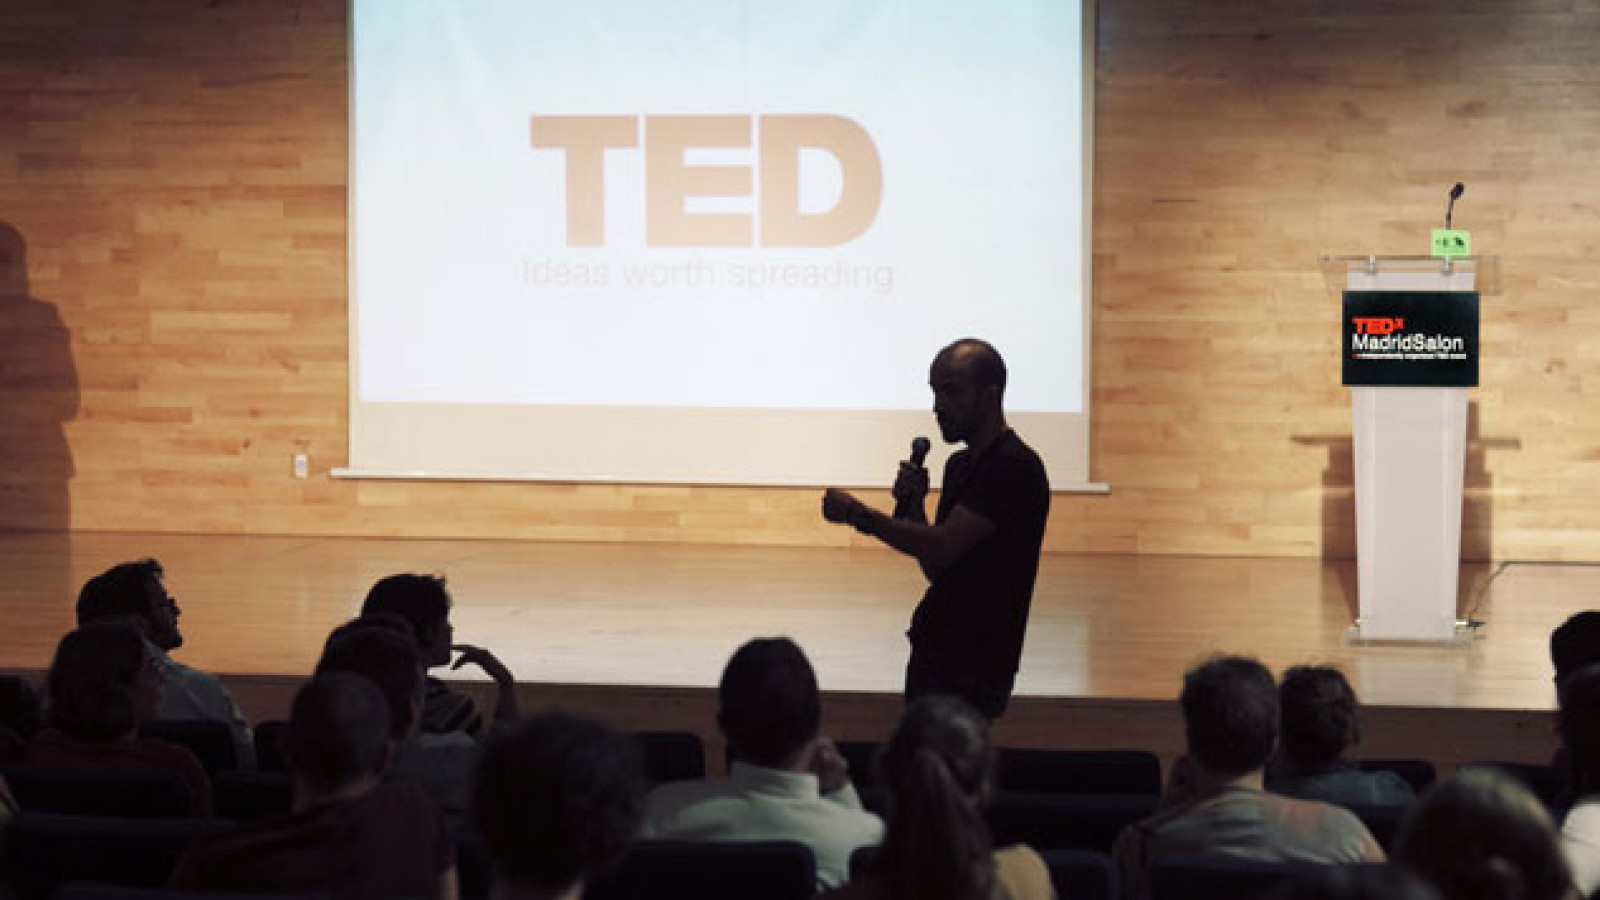 TEDxMadridSalon. ¿Es nuestro universo el único universo?